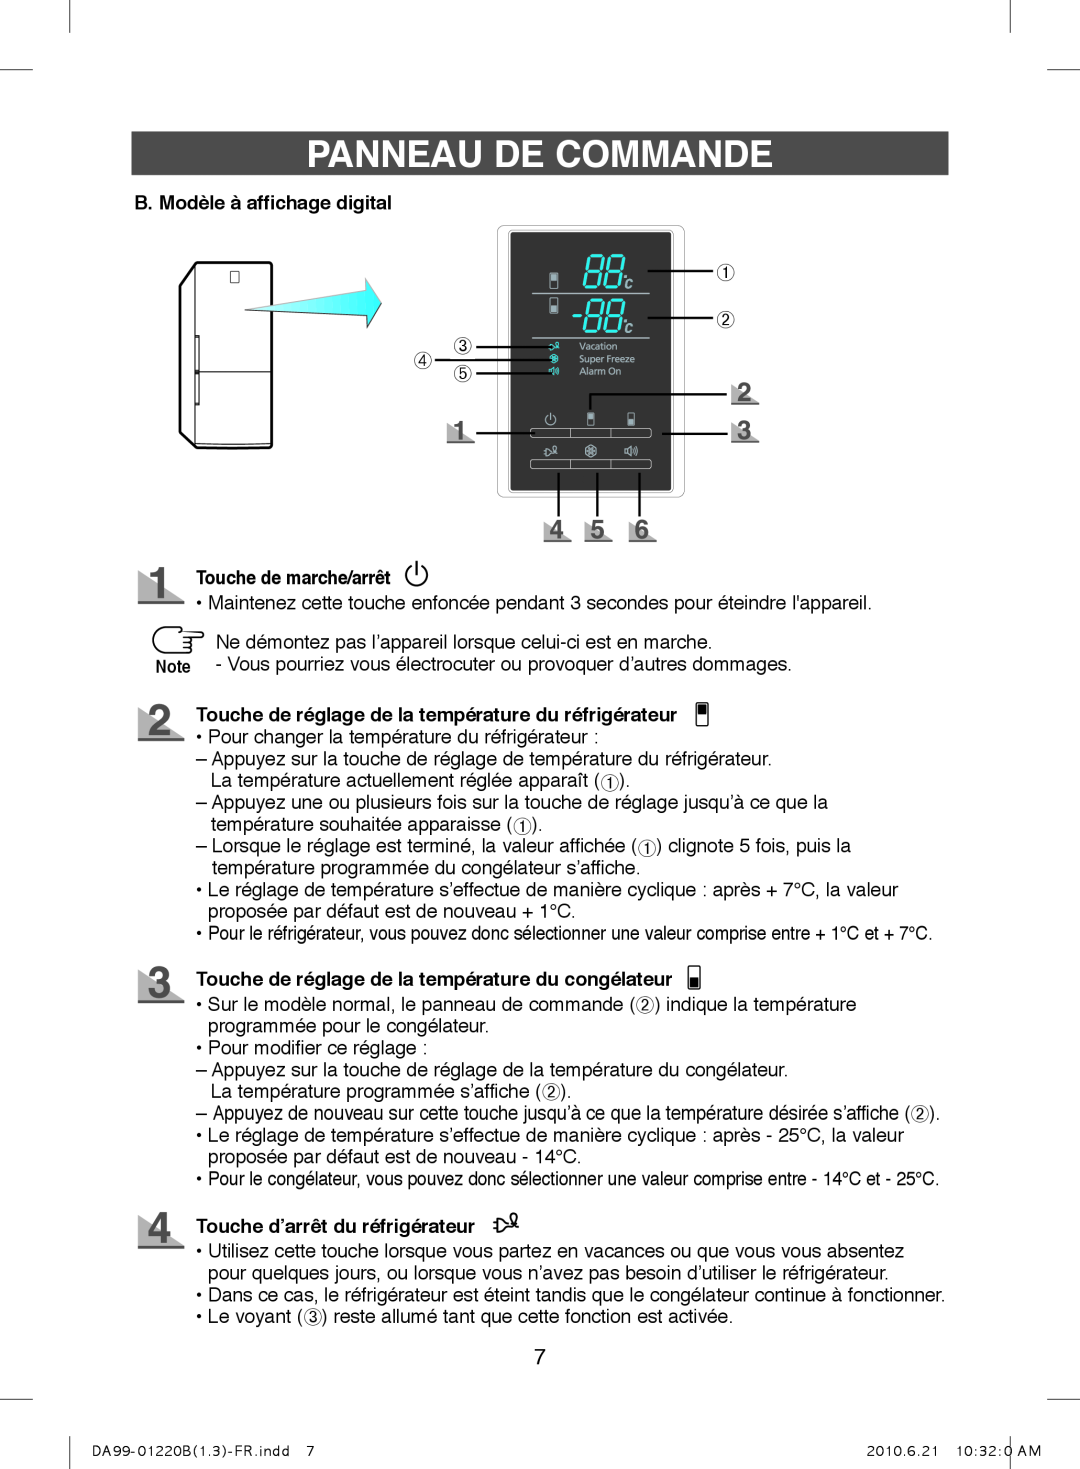 Samsung RL38ECTB1/XEF ➀ ➁ ➃ ➂➄, B. Modèle à affichage digital, Touche de marche/arrêt, Touche d’arrêt du réfrigérateur 